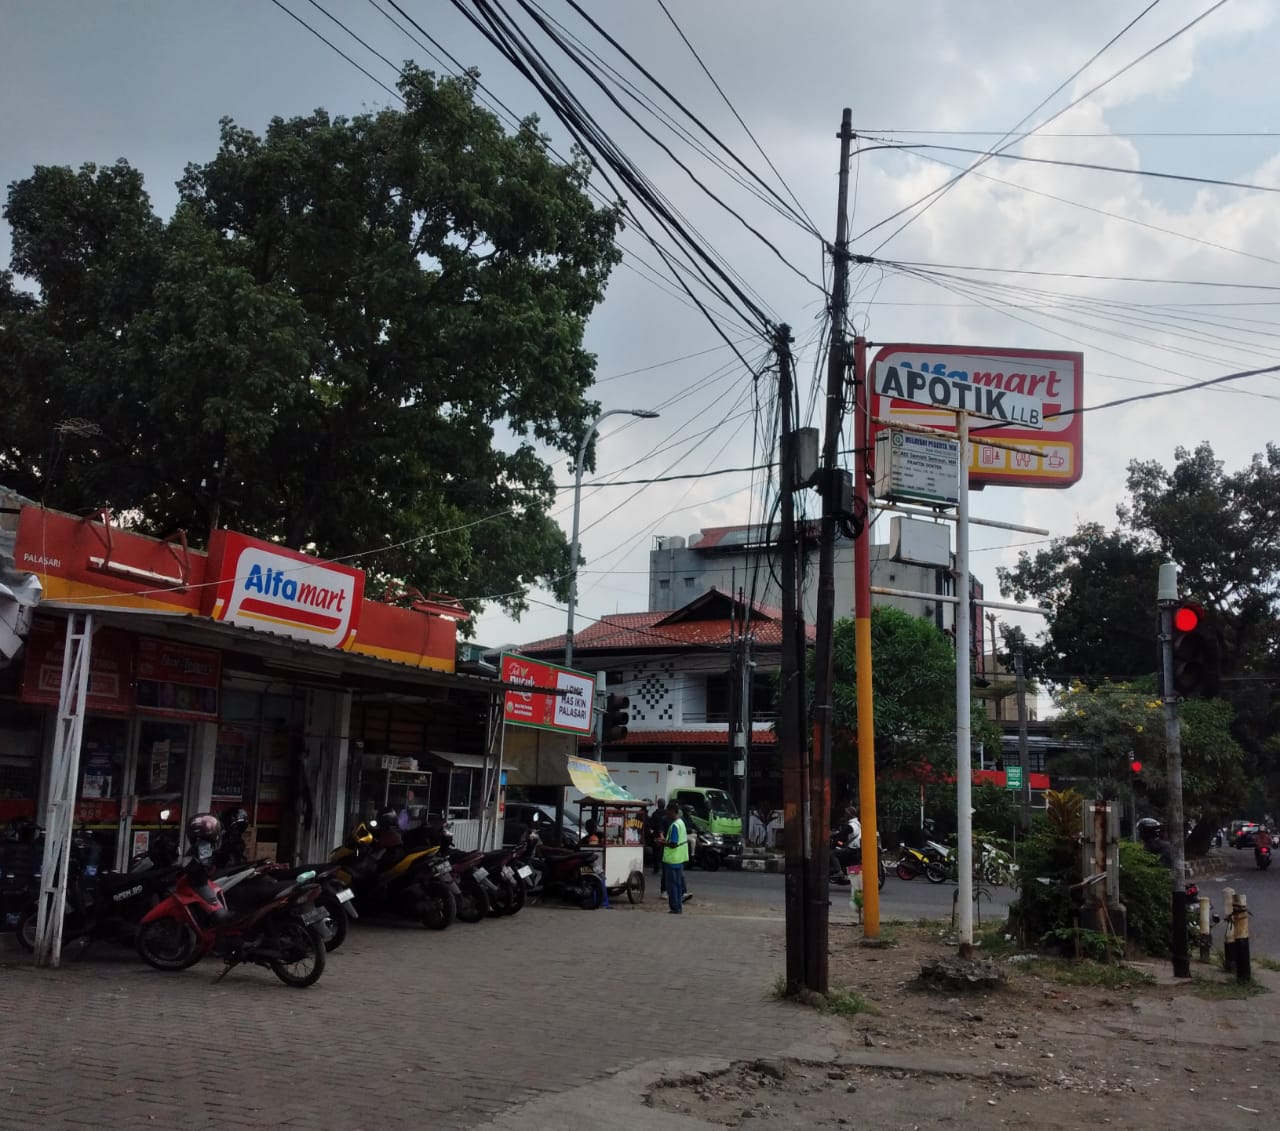 Ilustrasi: Minimarket yang berdiri di dekat Pasar Palasari, Kota Bandung.